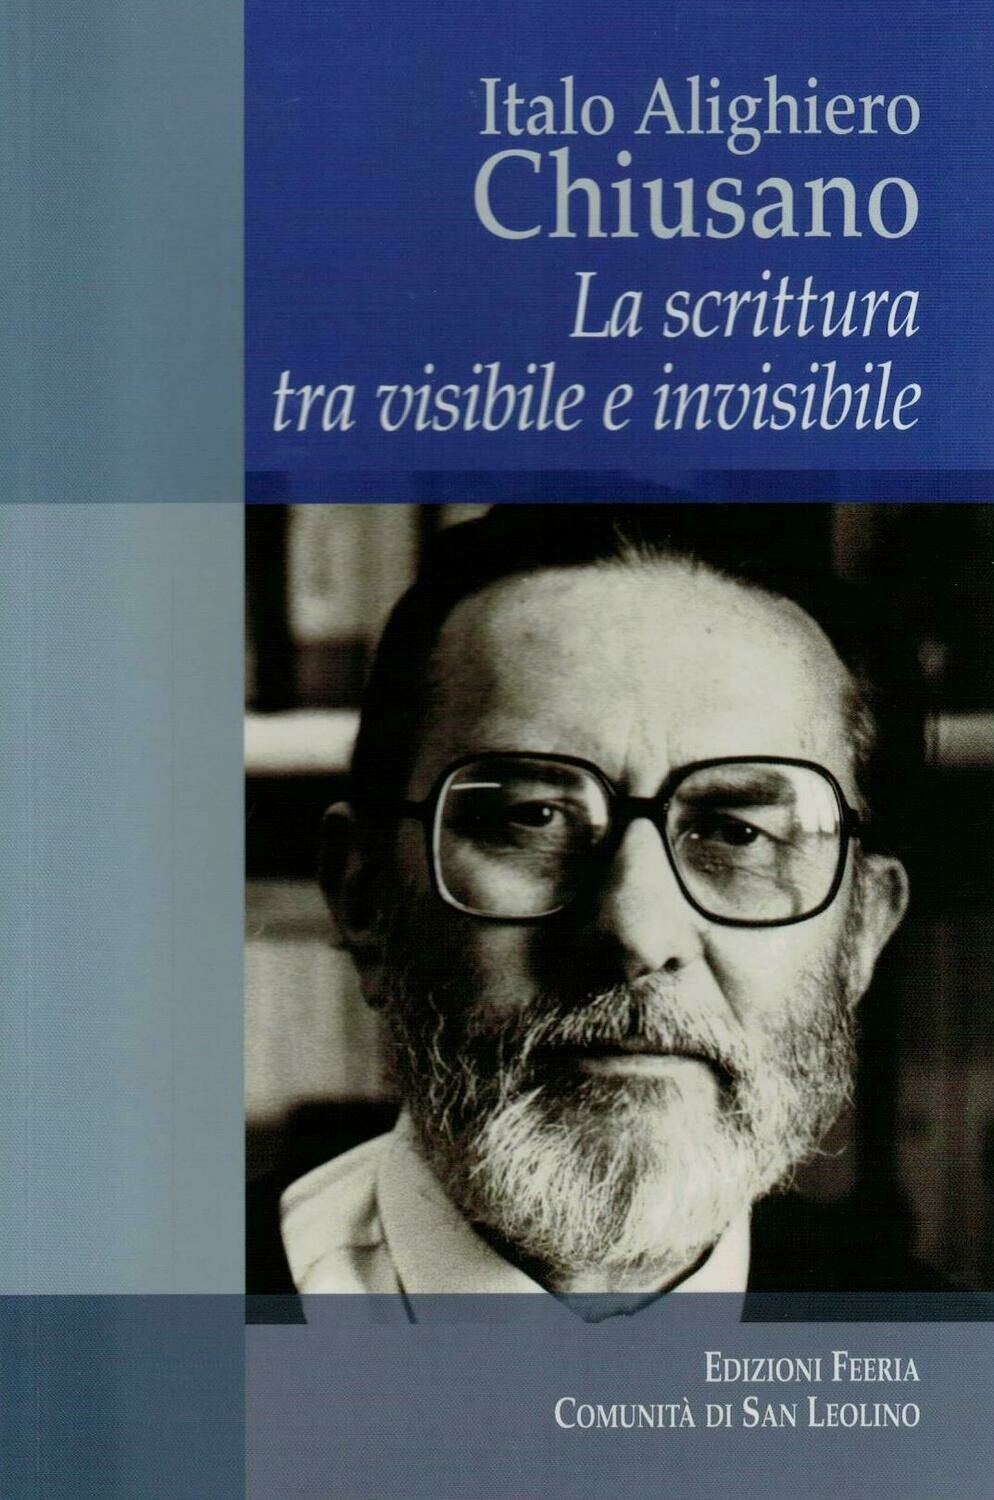 Italo Alighiero Chiusano - La scrittura tra visibile e invisibile (Autori vari)